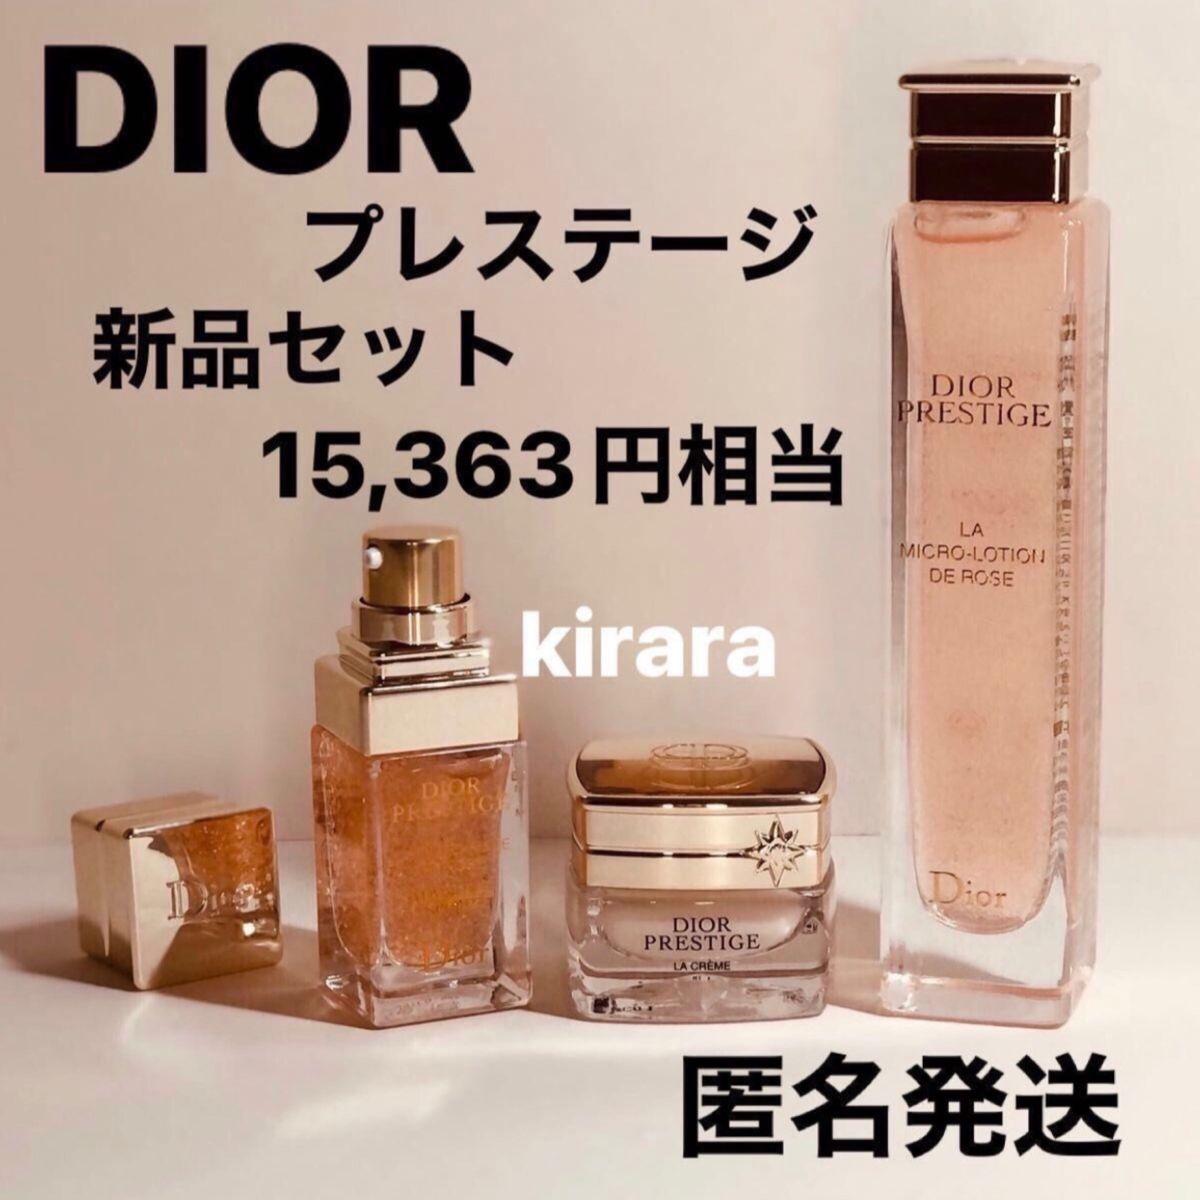 送料無料 新品3品セット Dior ディオール プレステージ ローションド